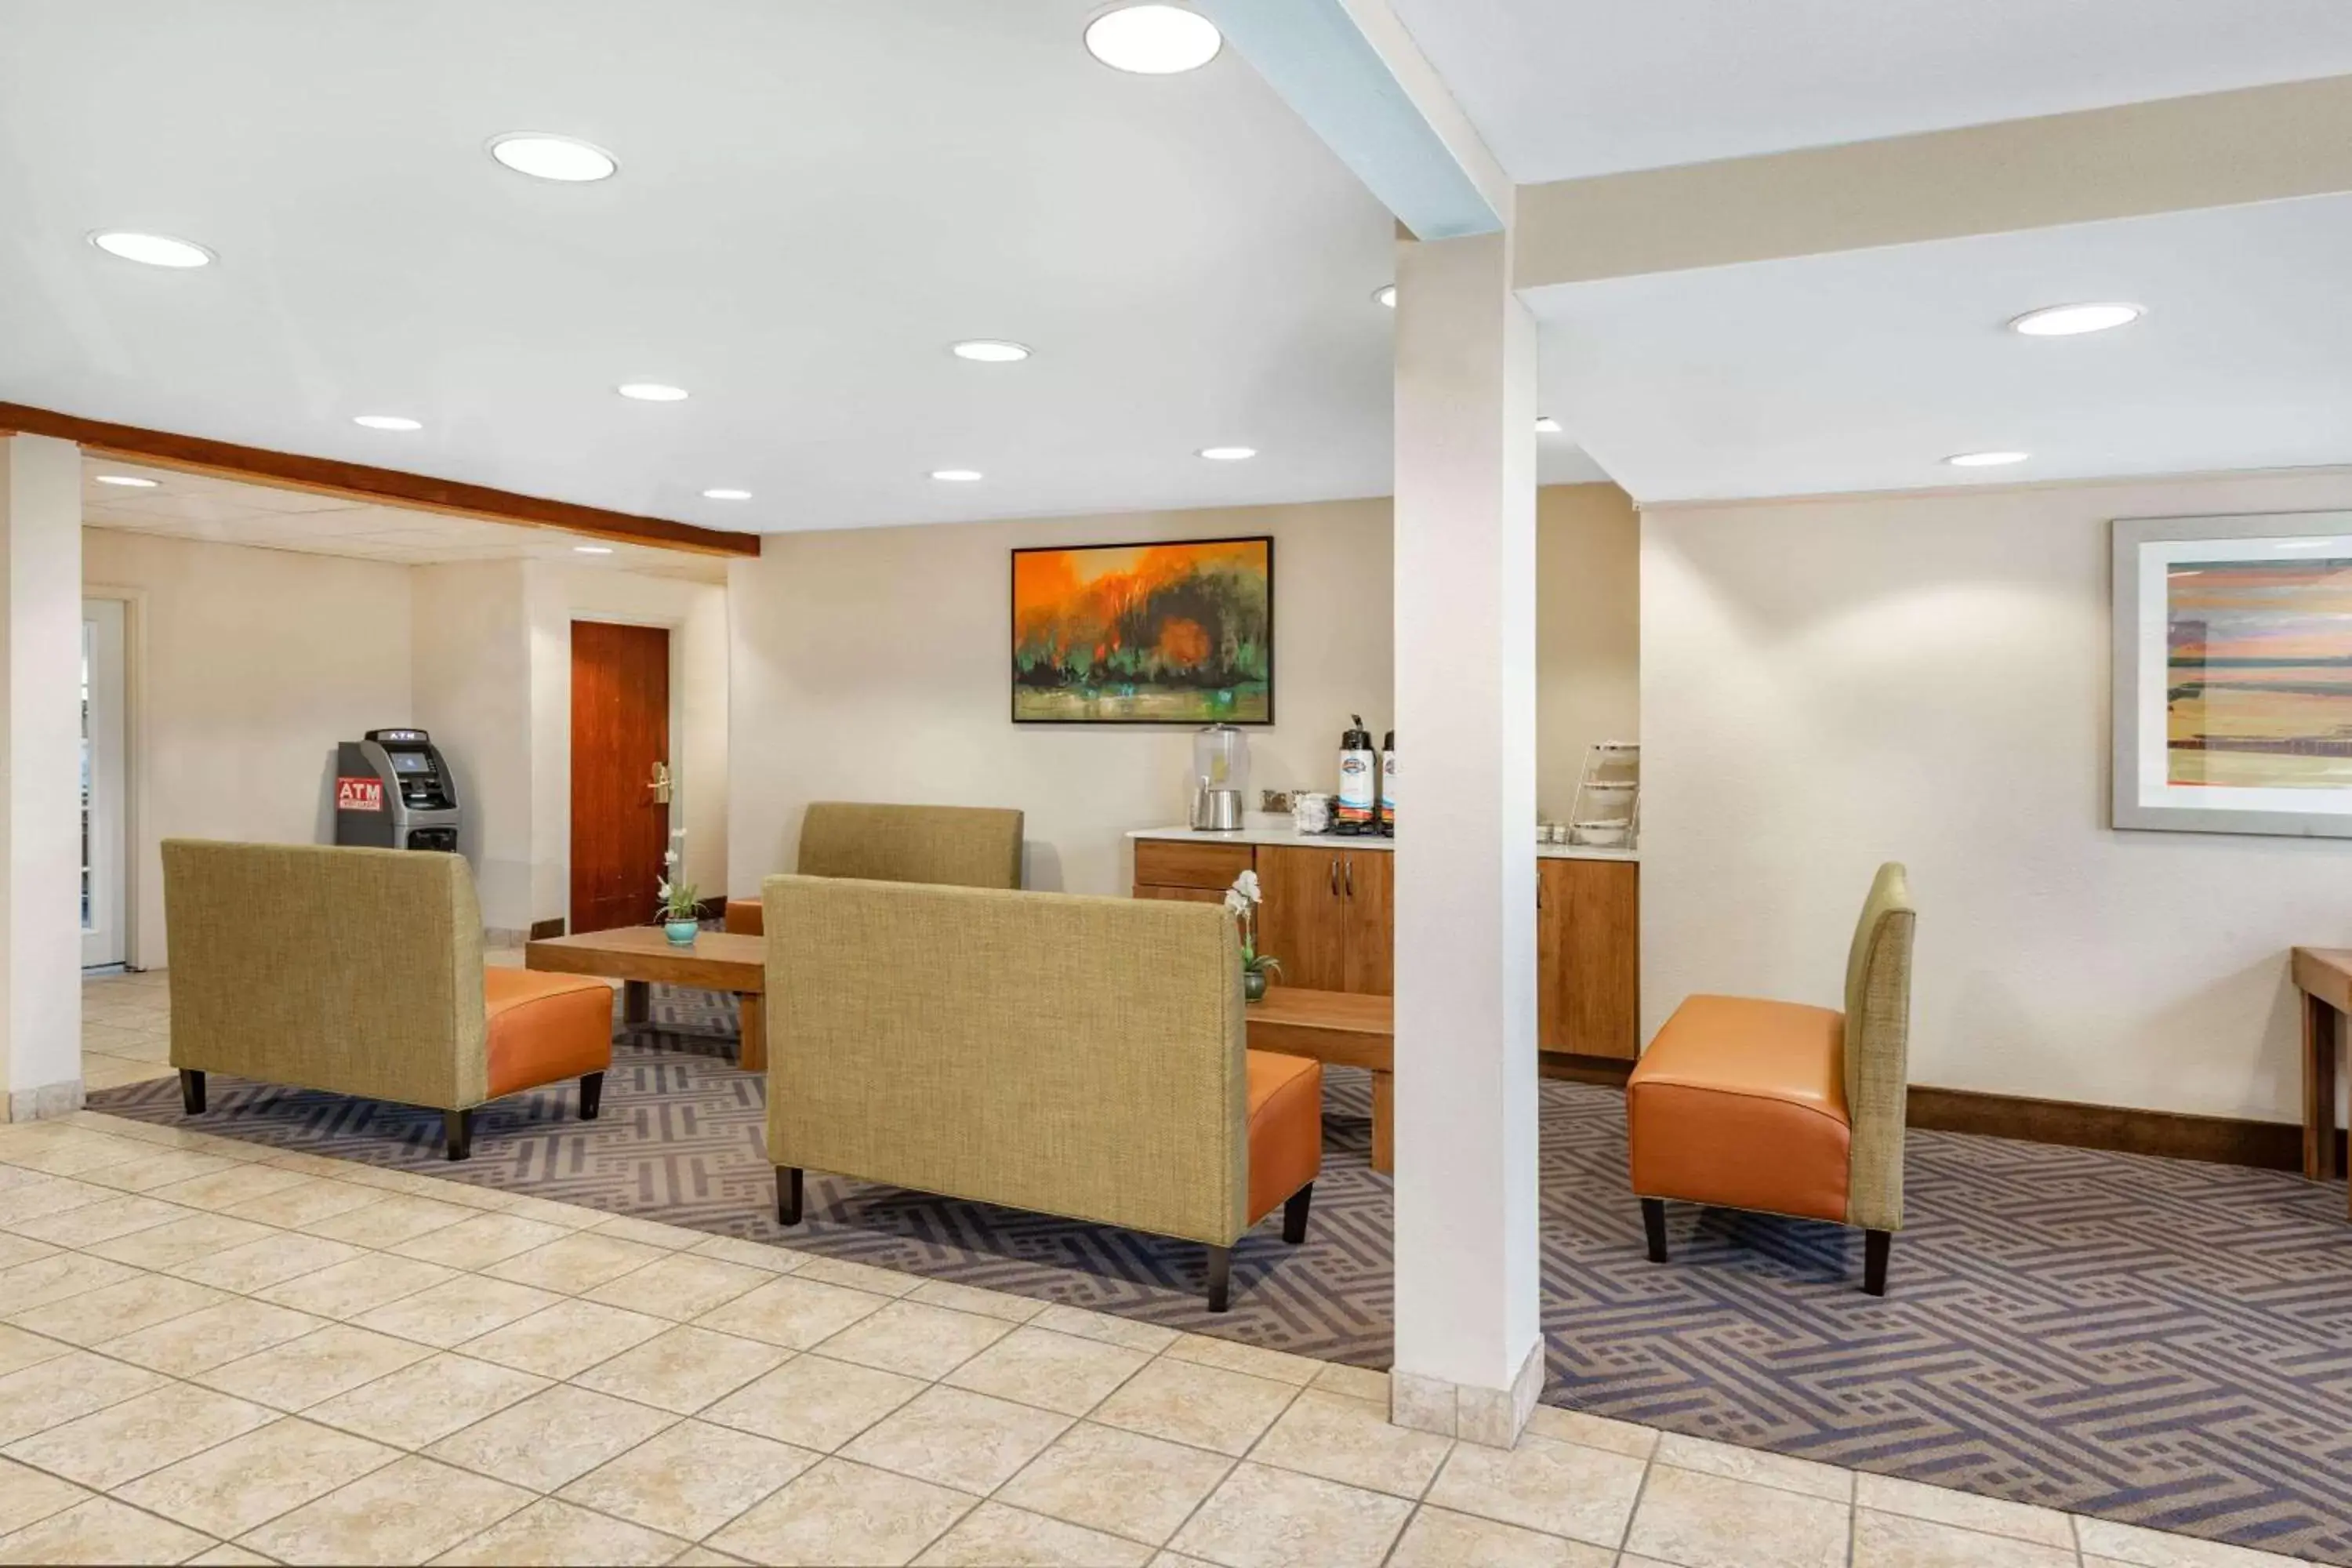 Lobby or reception, Lobby/Reception in Baymont by Wyndham Farmington